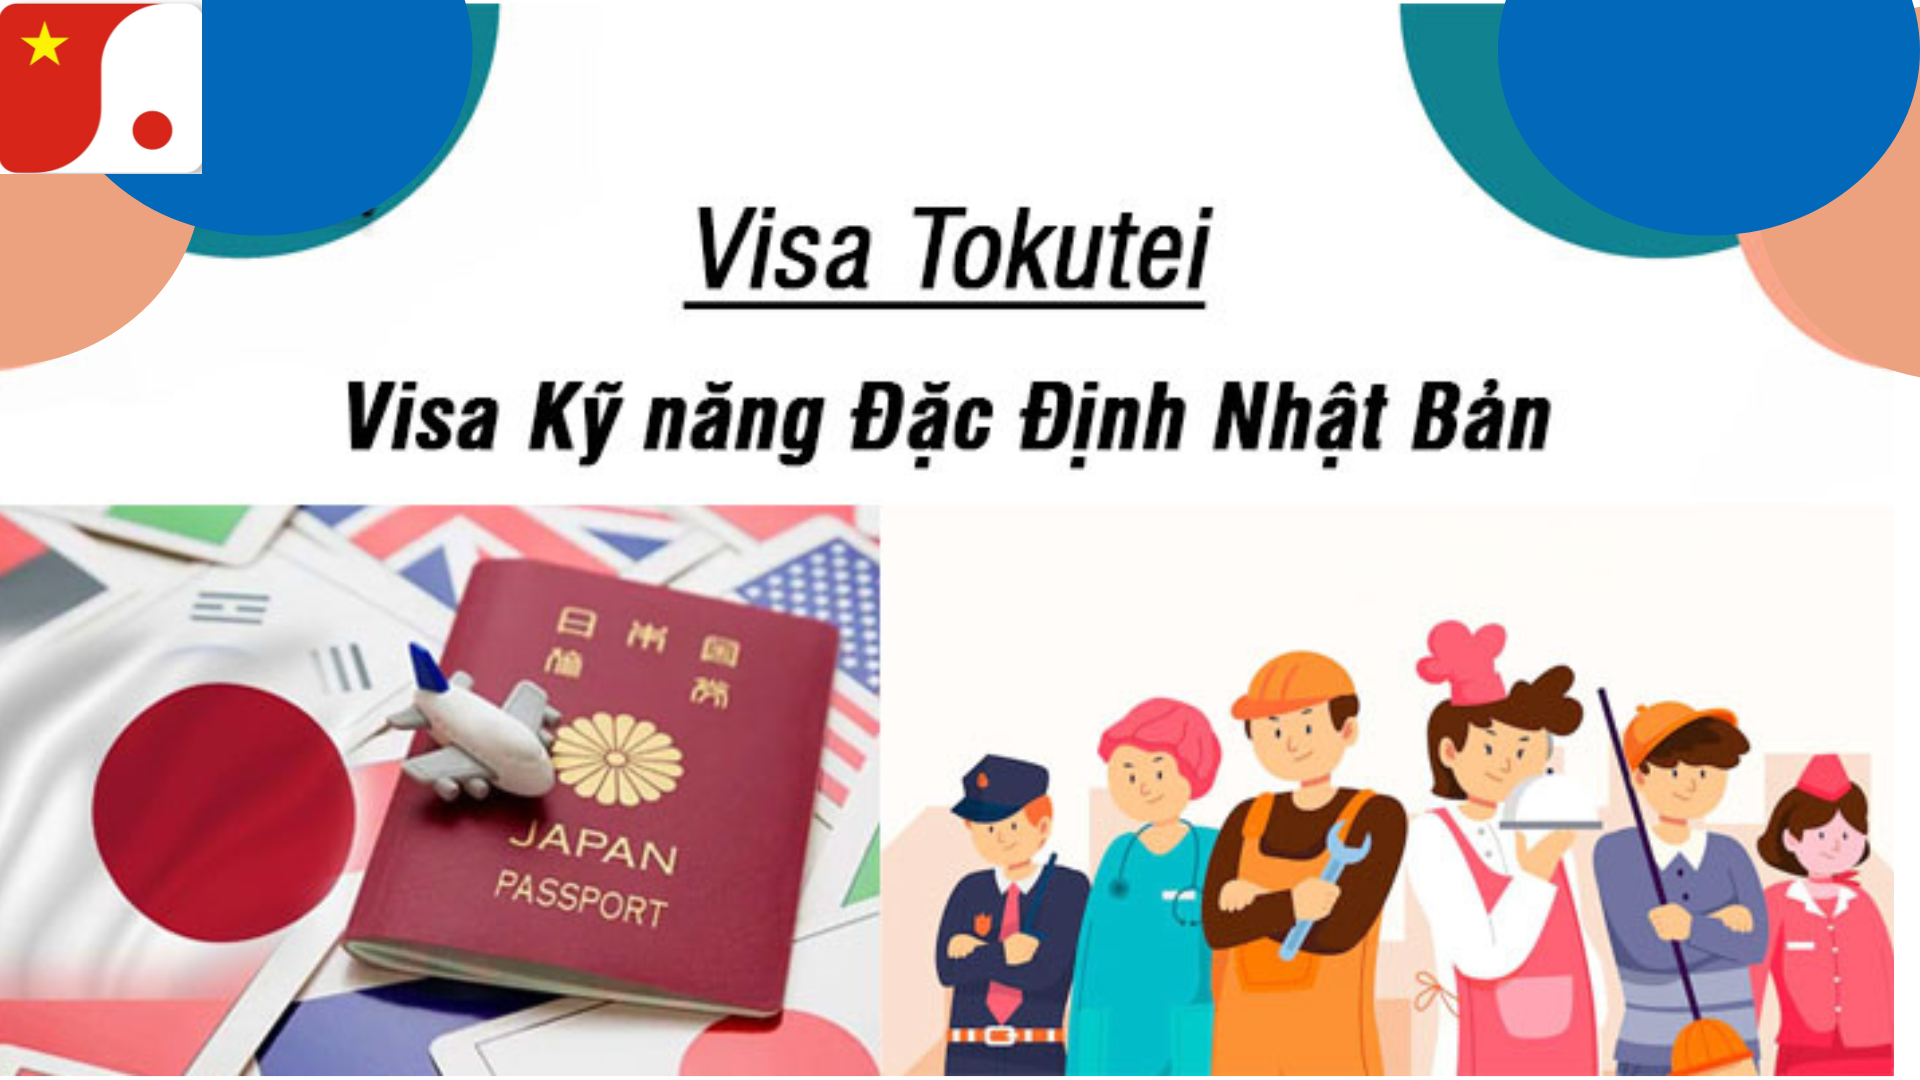 Visa kỹ năng đặc định Nhật Bản